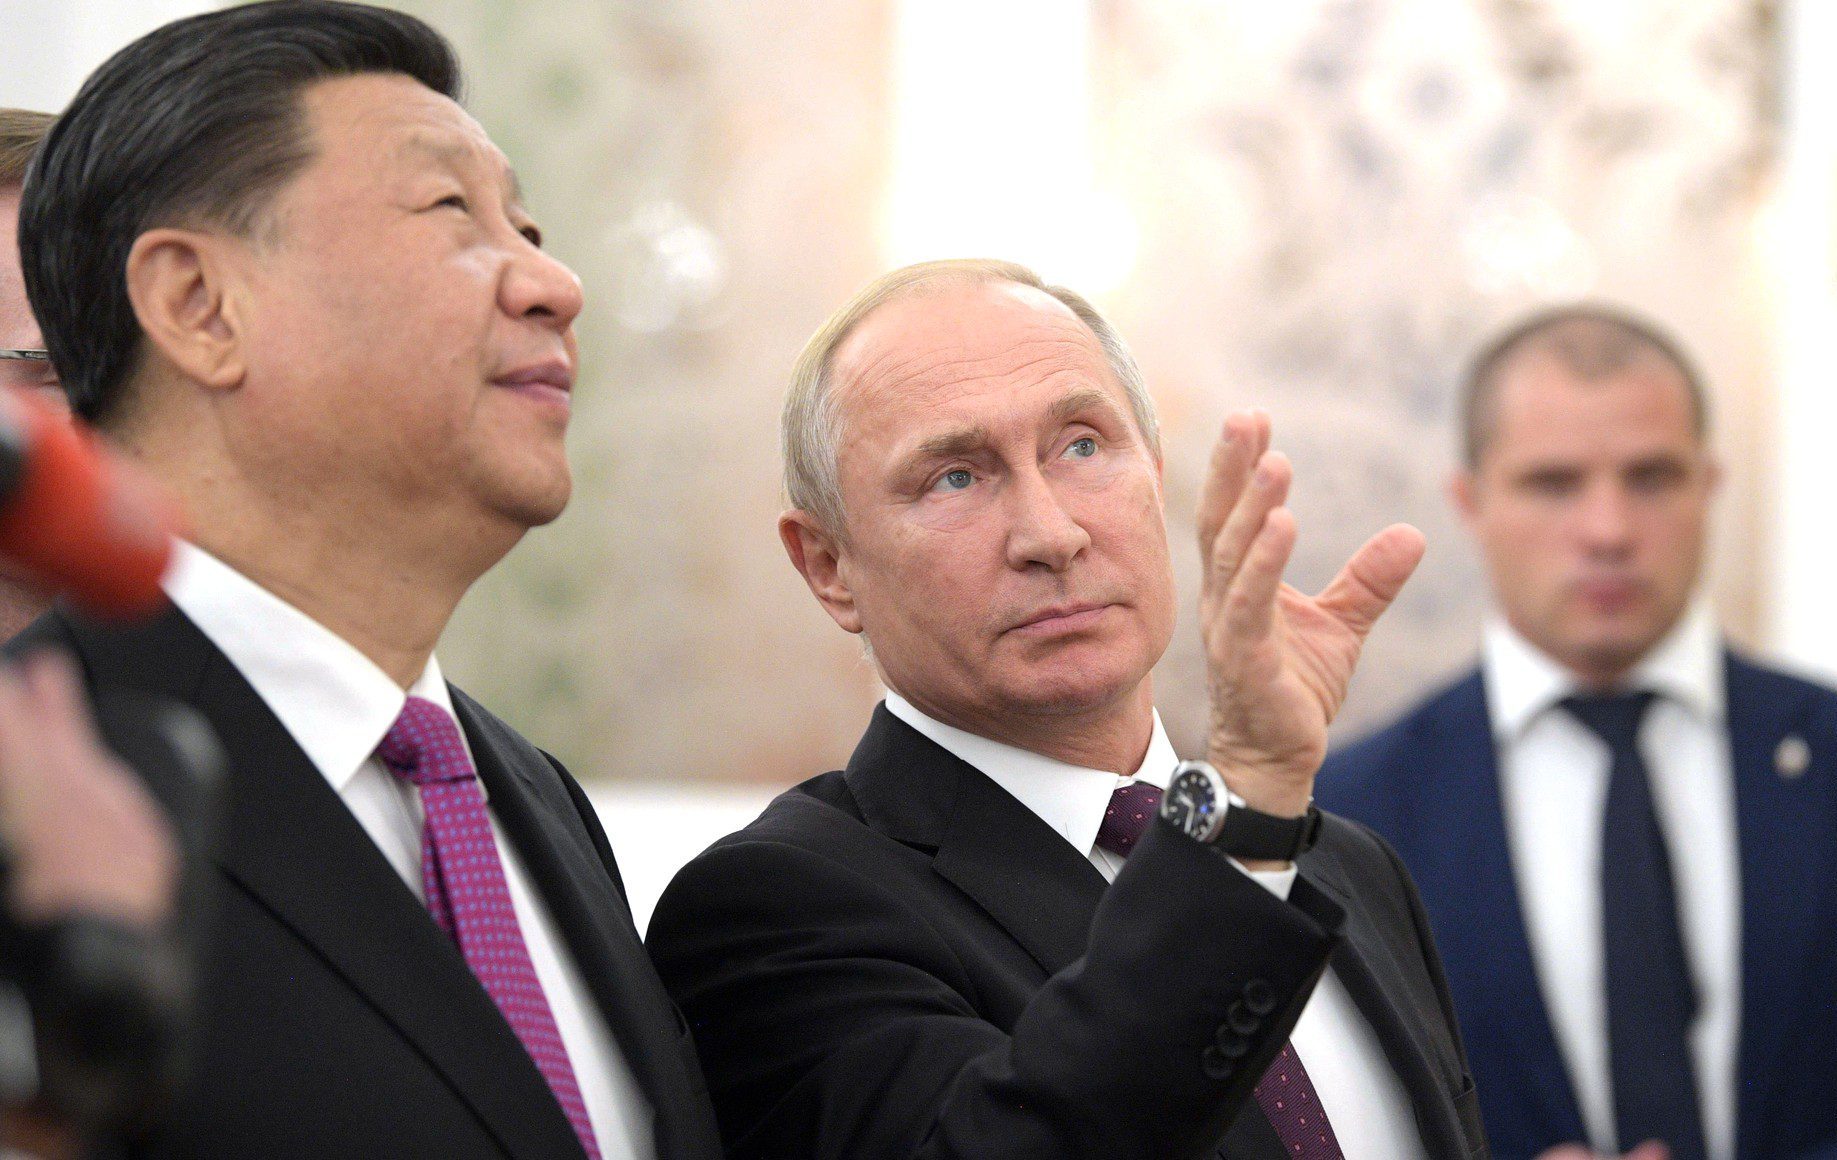 Vladimir_Putin_and_Xi_Jinping_(2019-06-05)_31